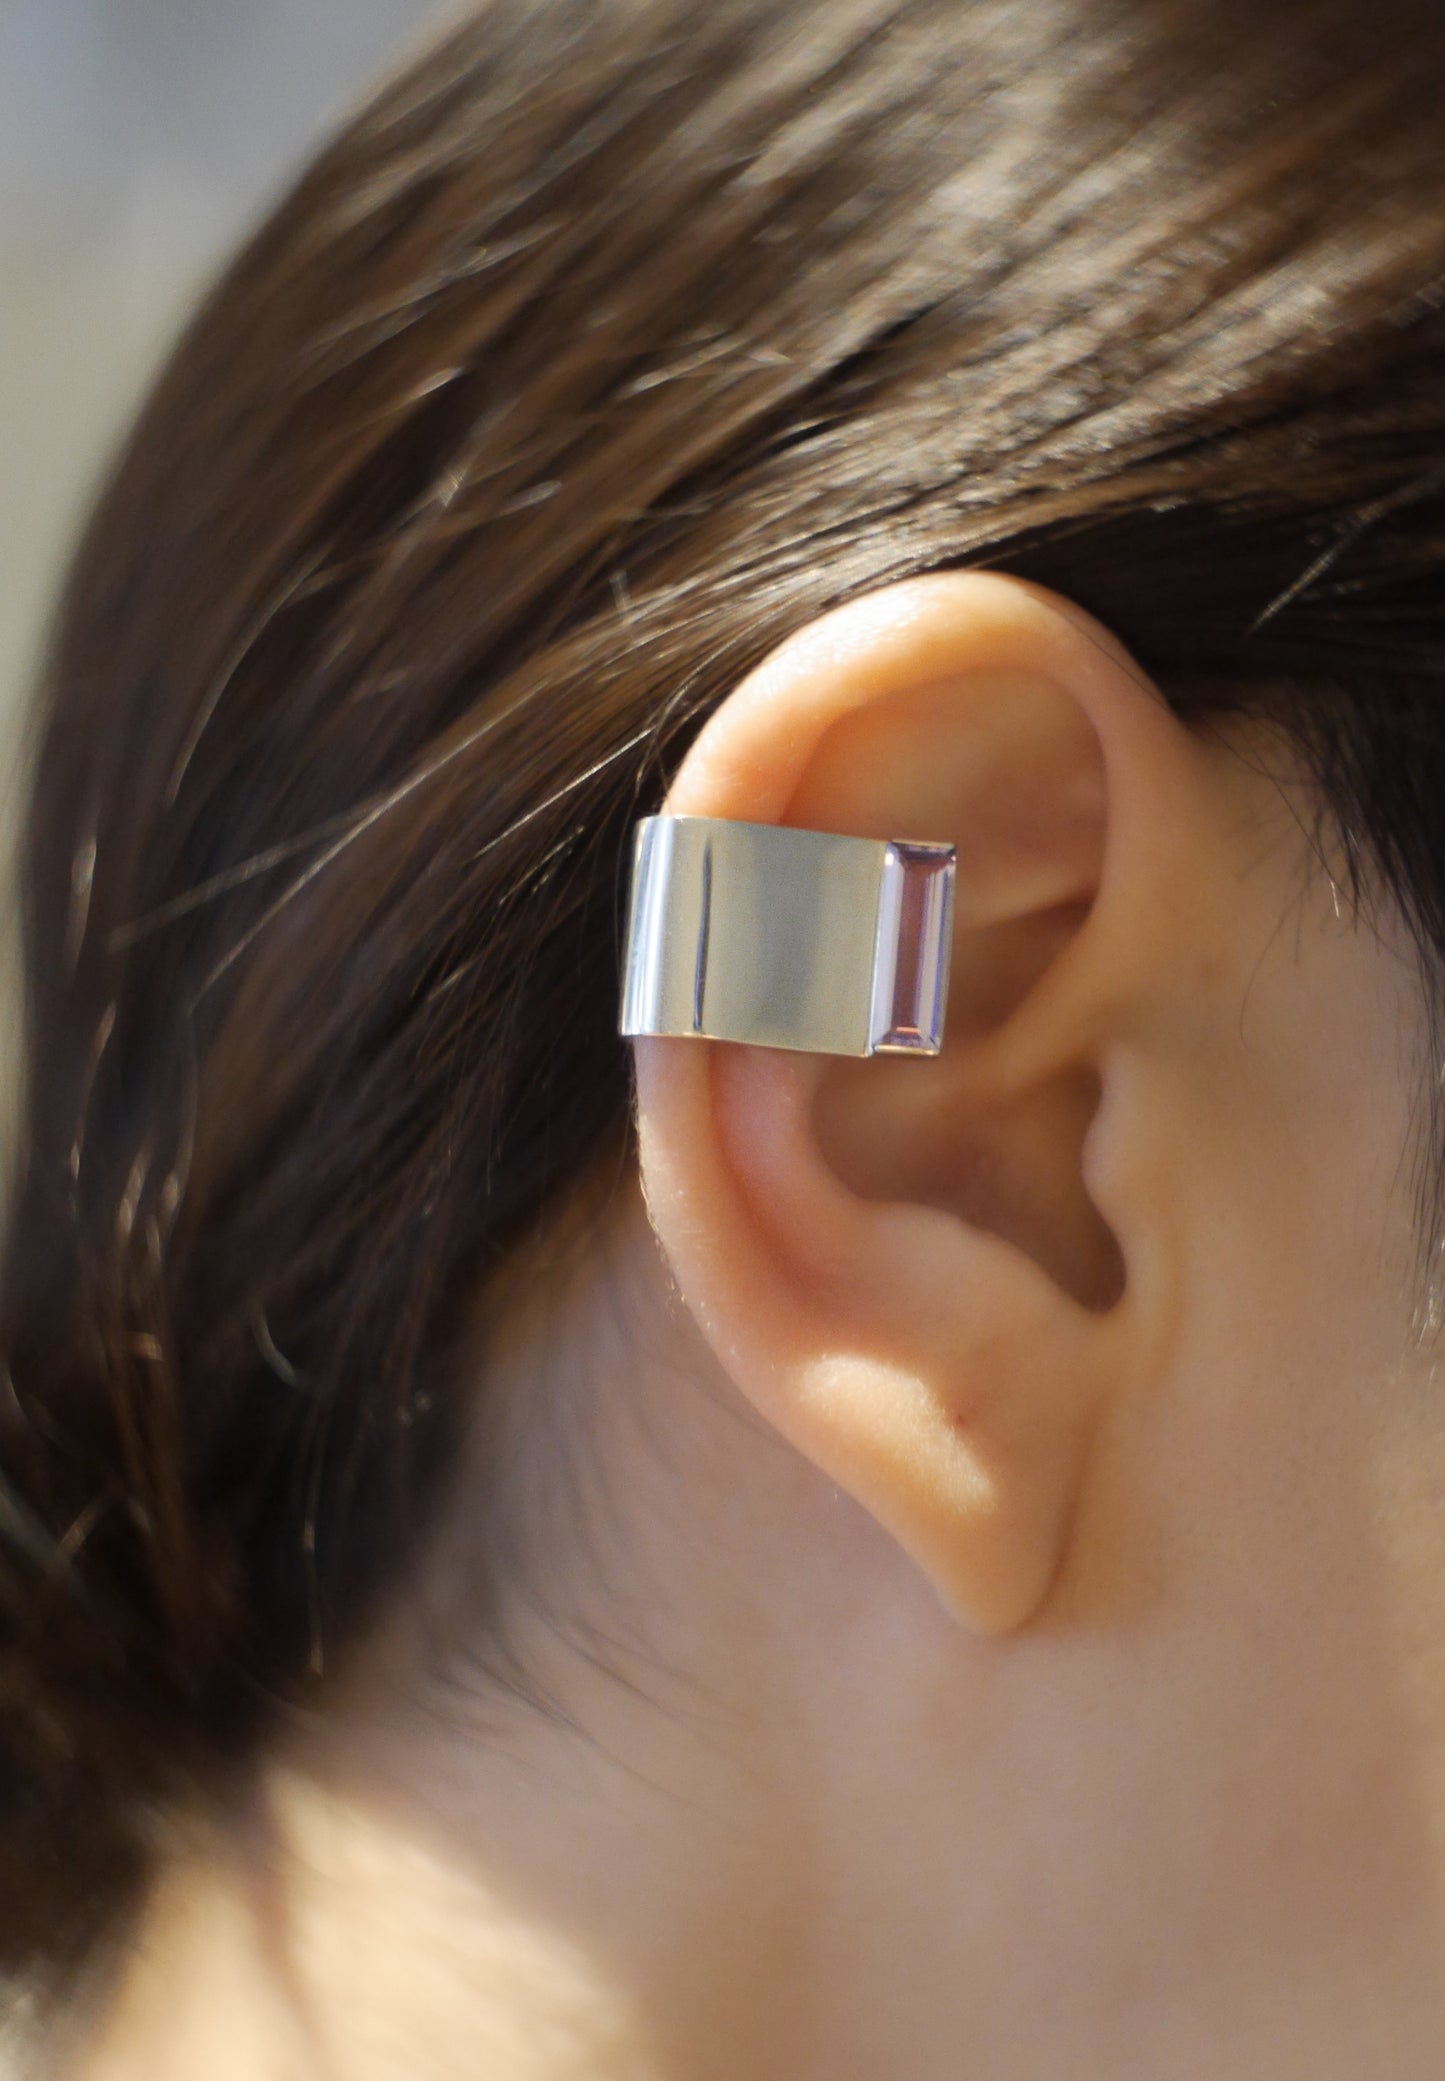 助听器矿物|助听器矿物|耳罩| SV |绿玛瑙